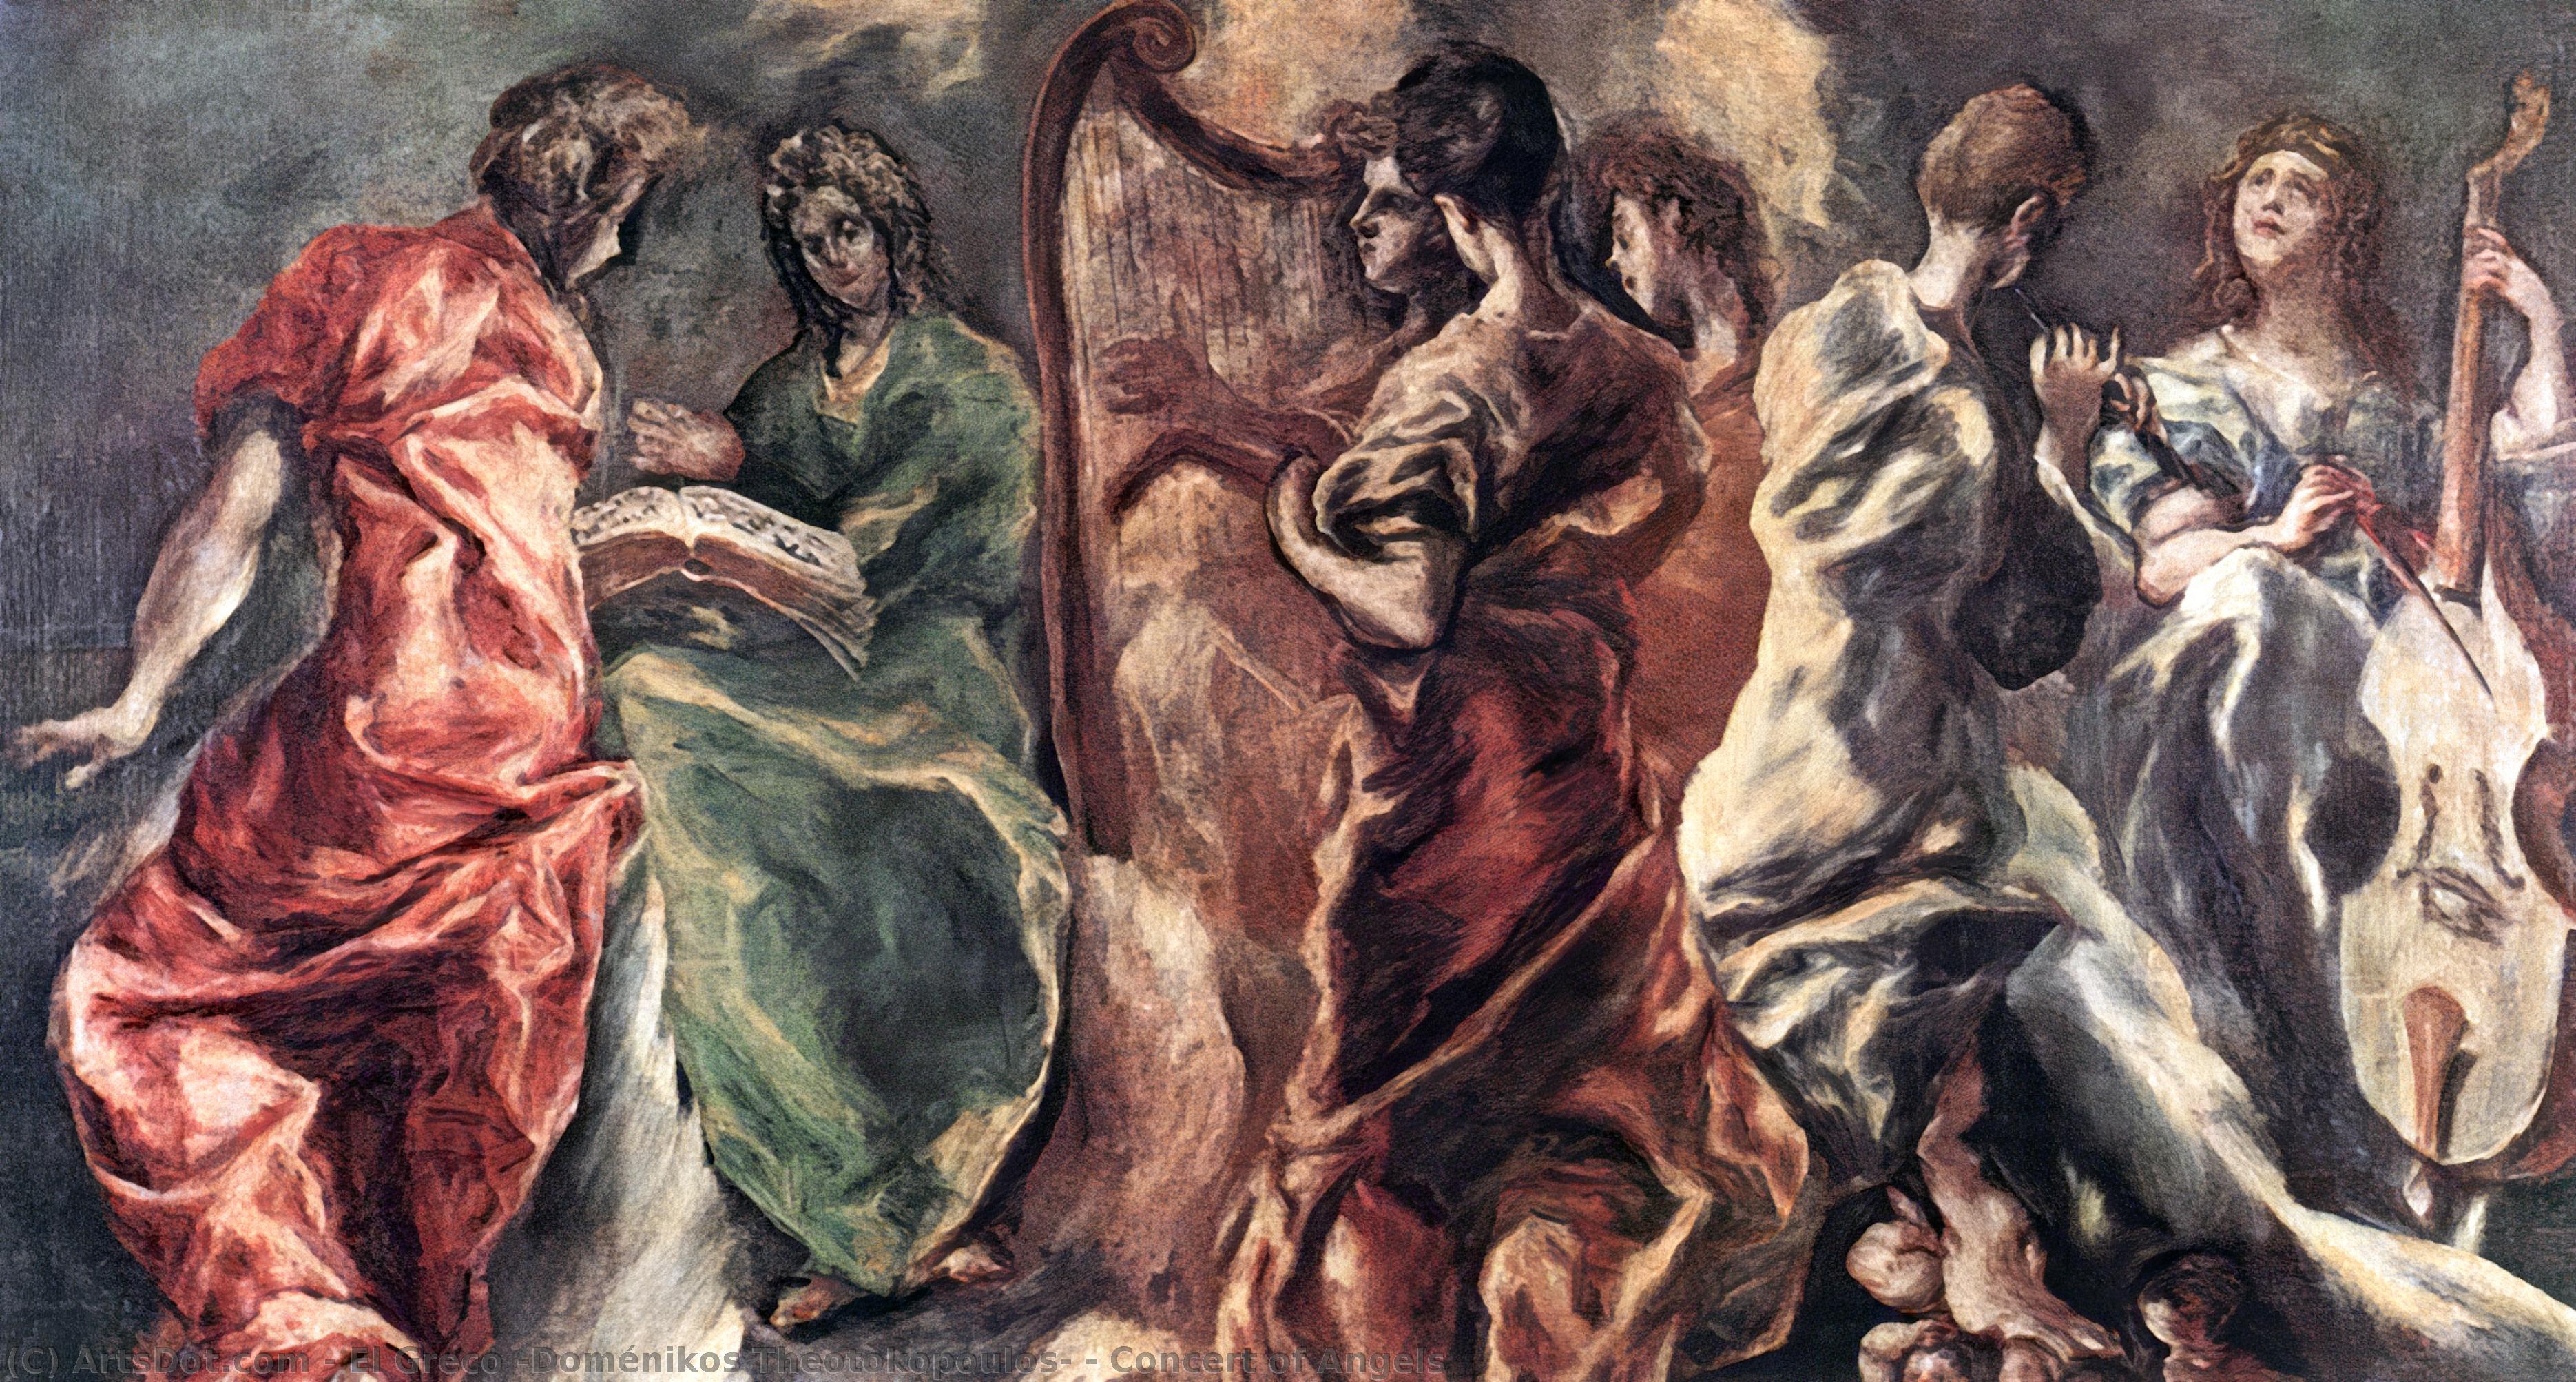 WikiOO.org - Encyclopedia of Fine Arts - Malba, Artwork El Greco (Doménikos Theotokopoulos) - Concert of Angels